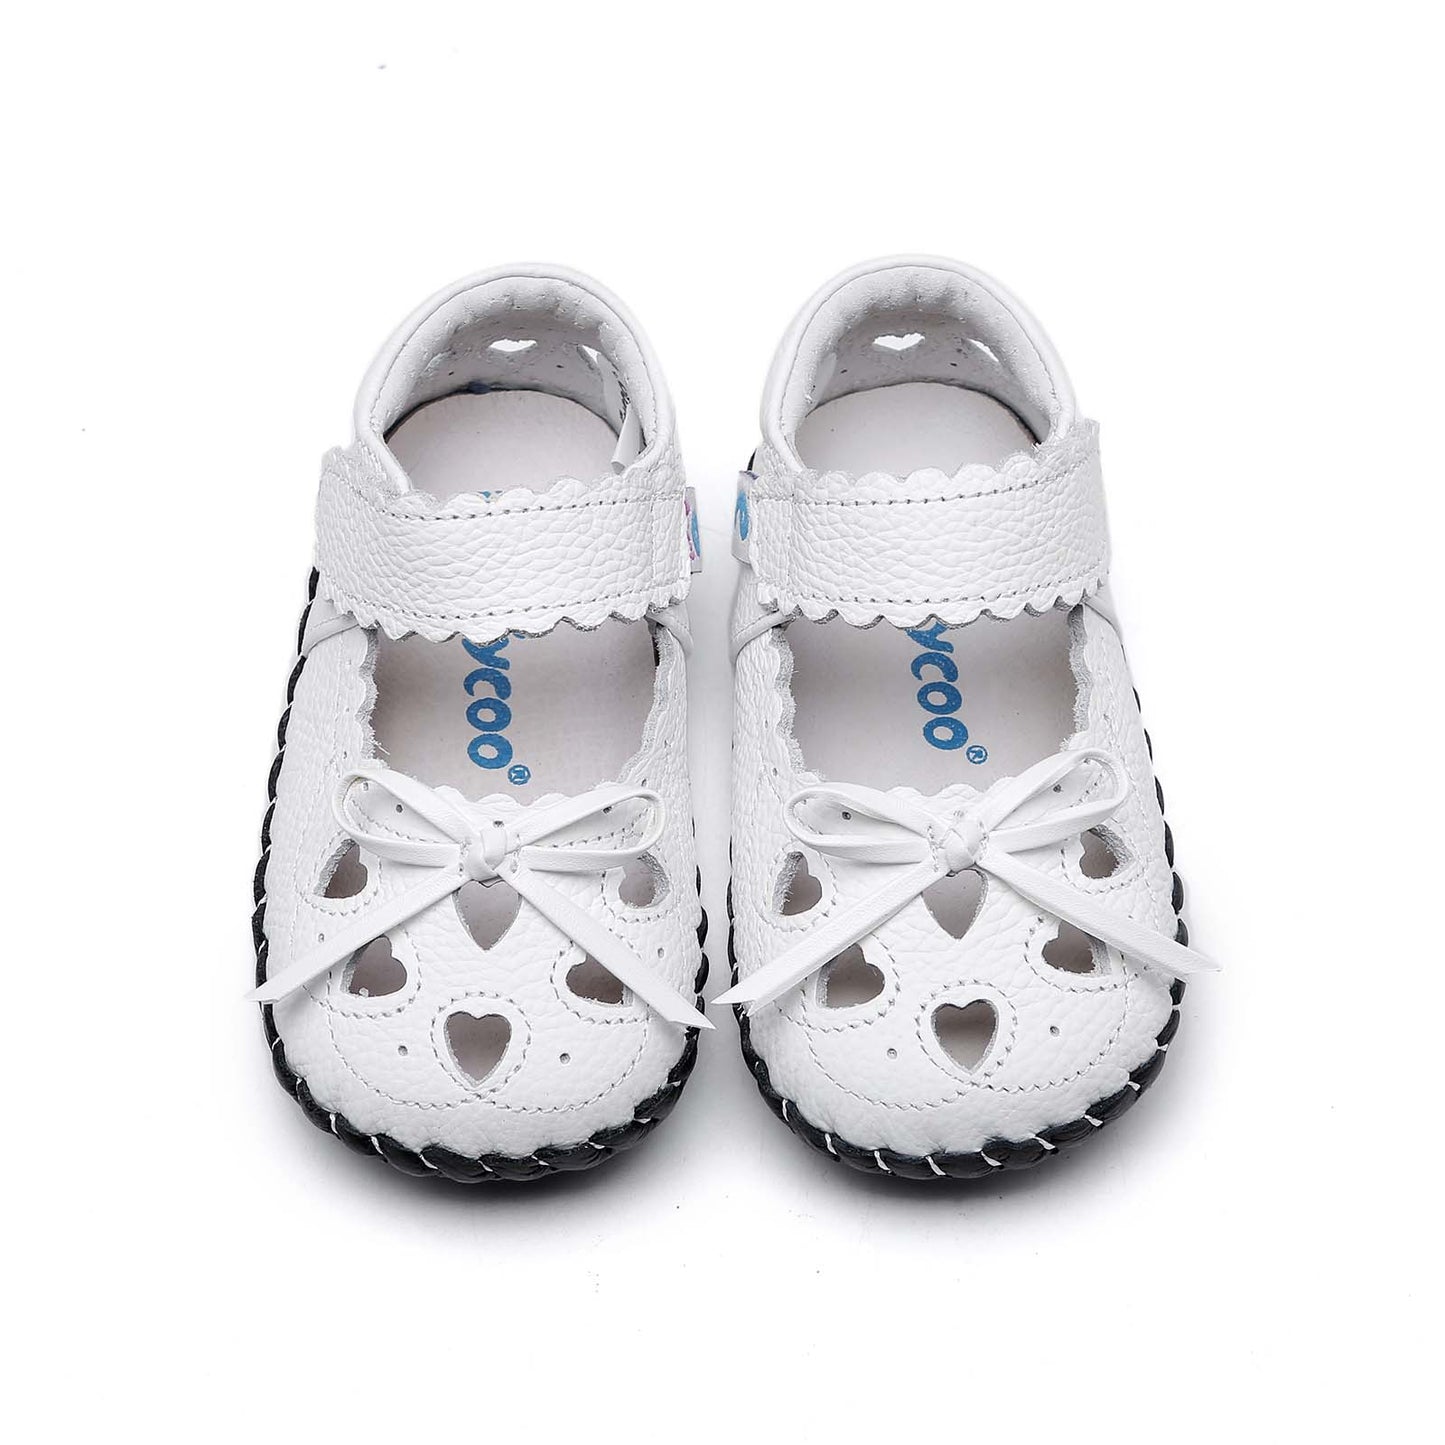 Freycoo - White Evelyn Infant Shoes